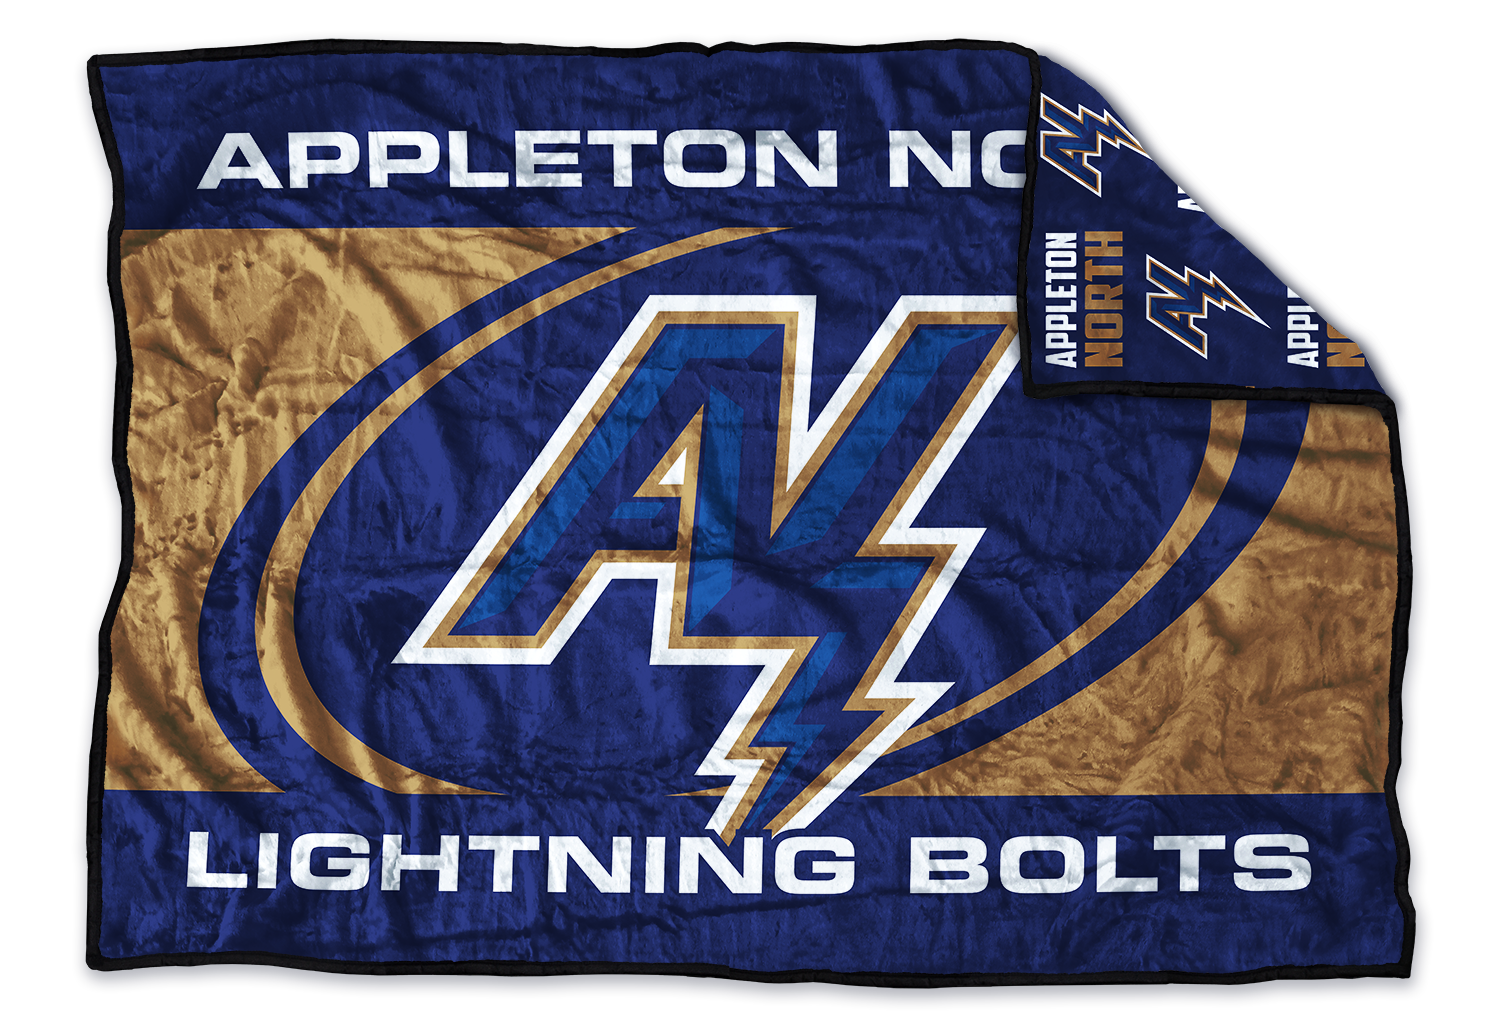 Appleton North Lightning Bolts